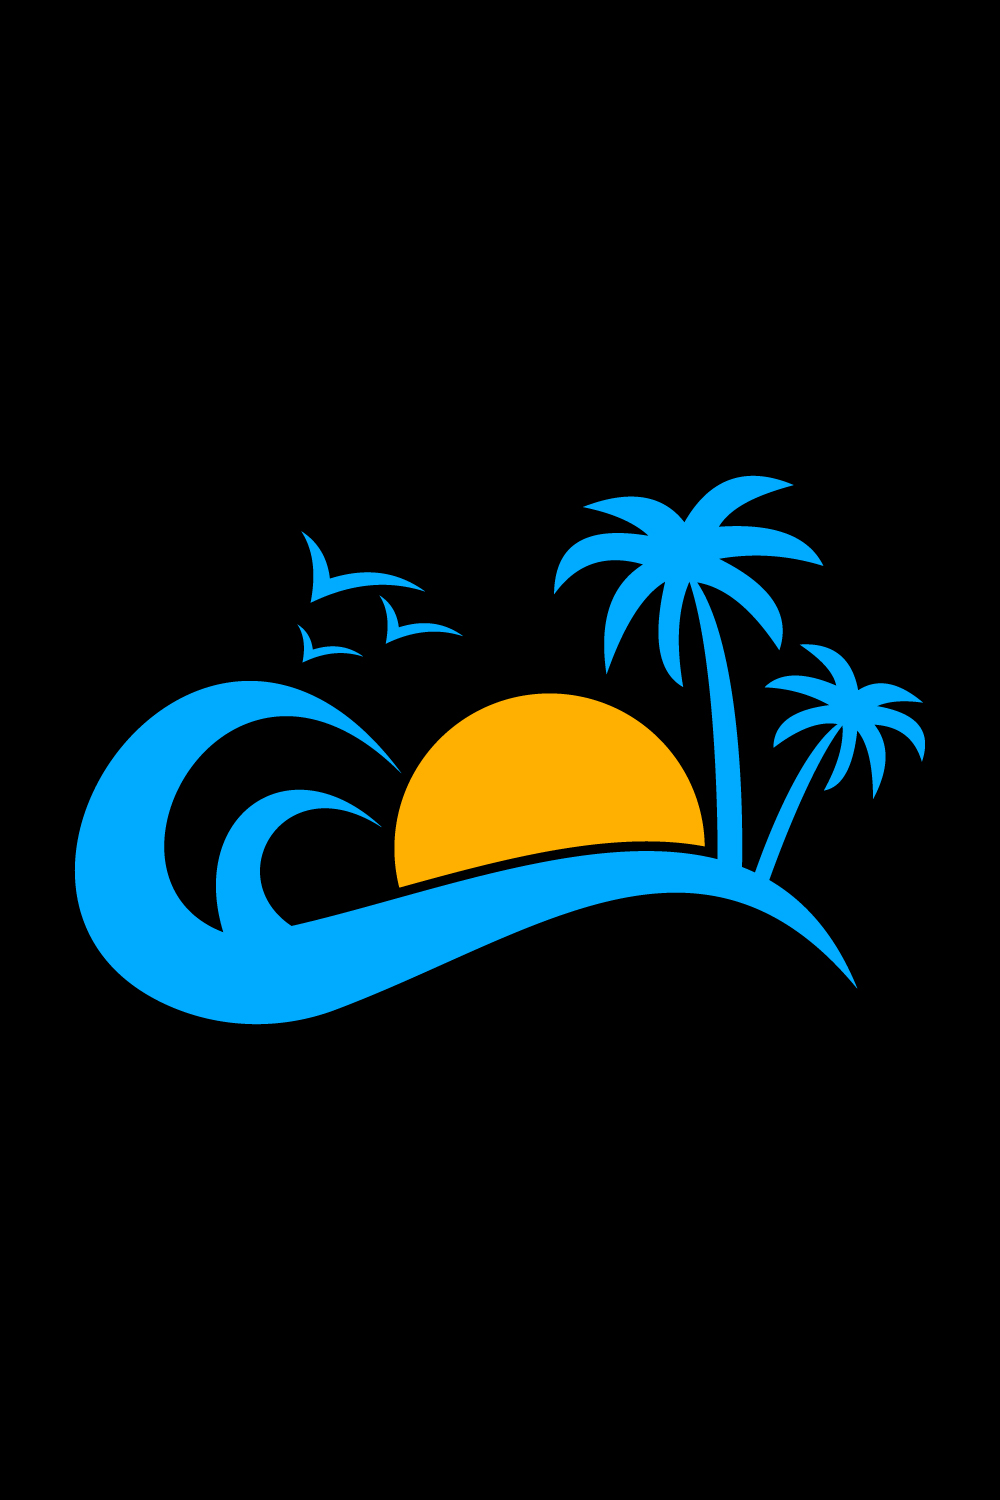 Creative Beach logo design, Vector design concept pinterest preview image.